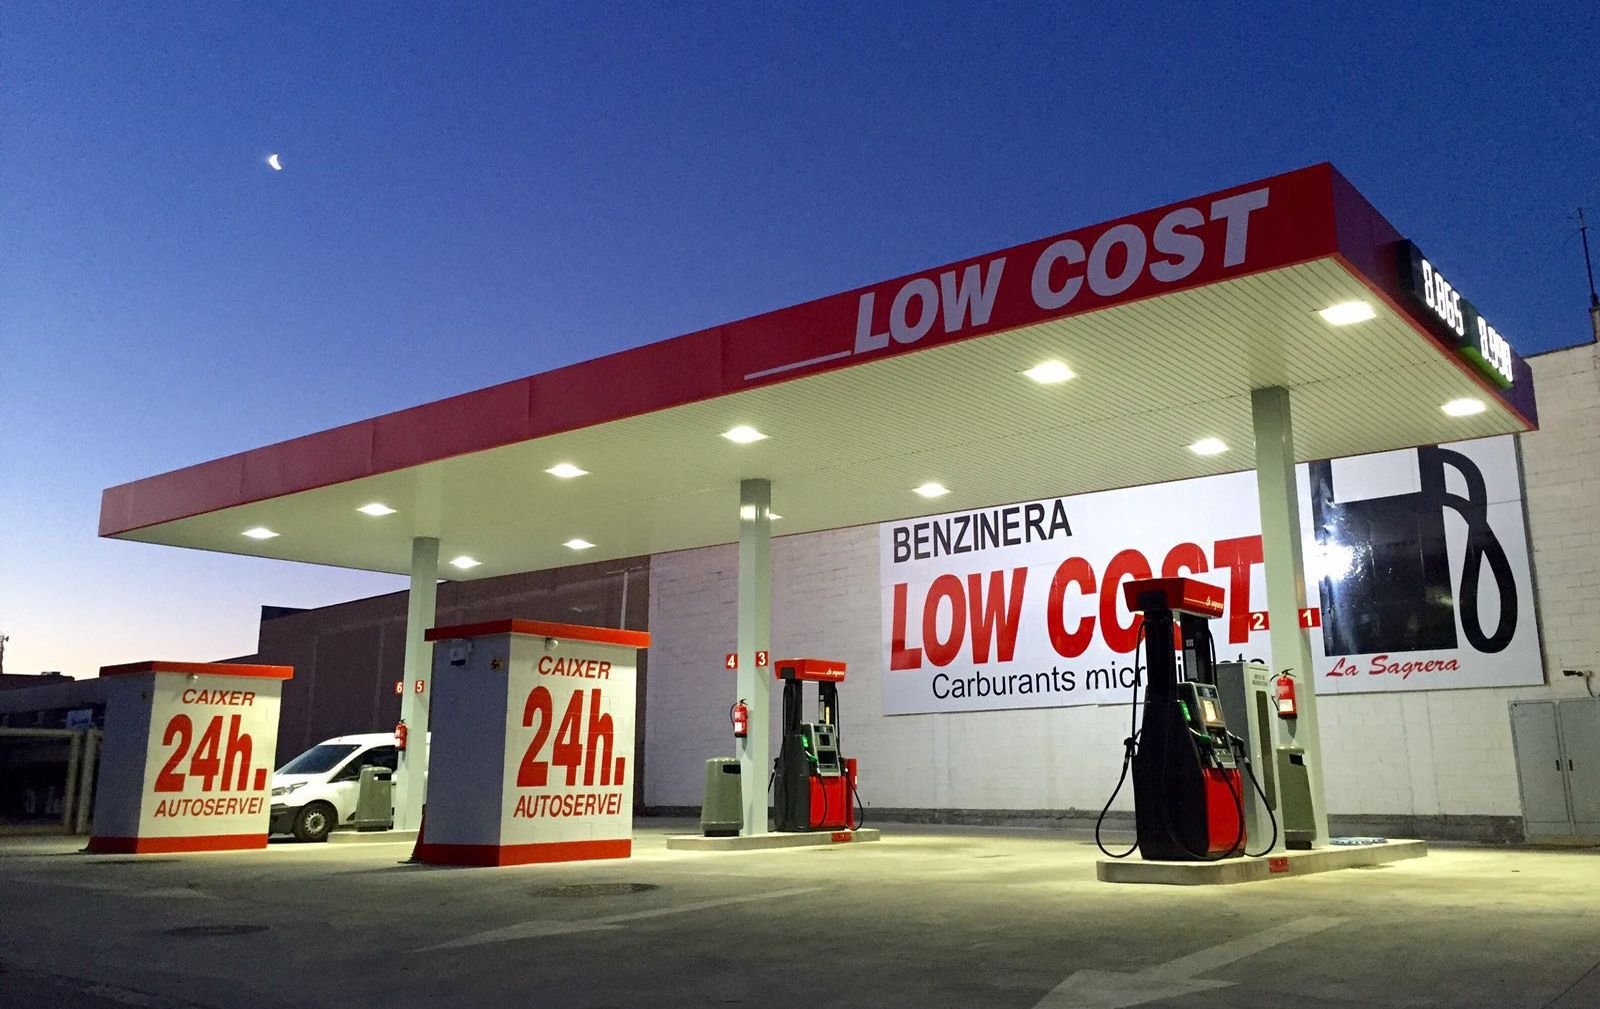 gasolinera-eess-low-coste-en-lasagrera